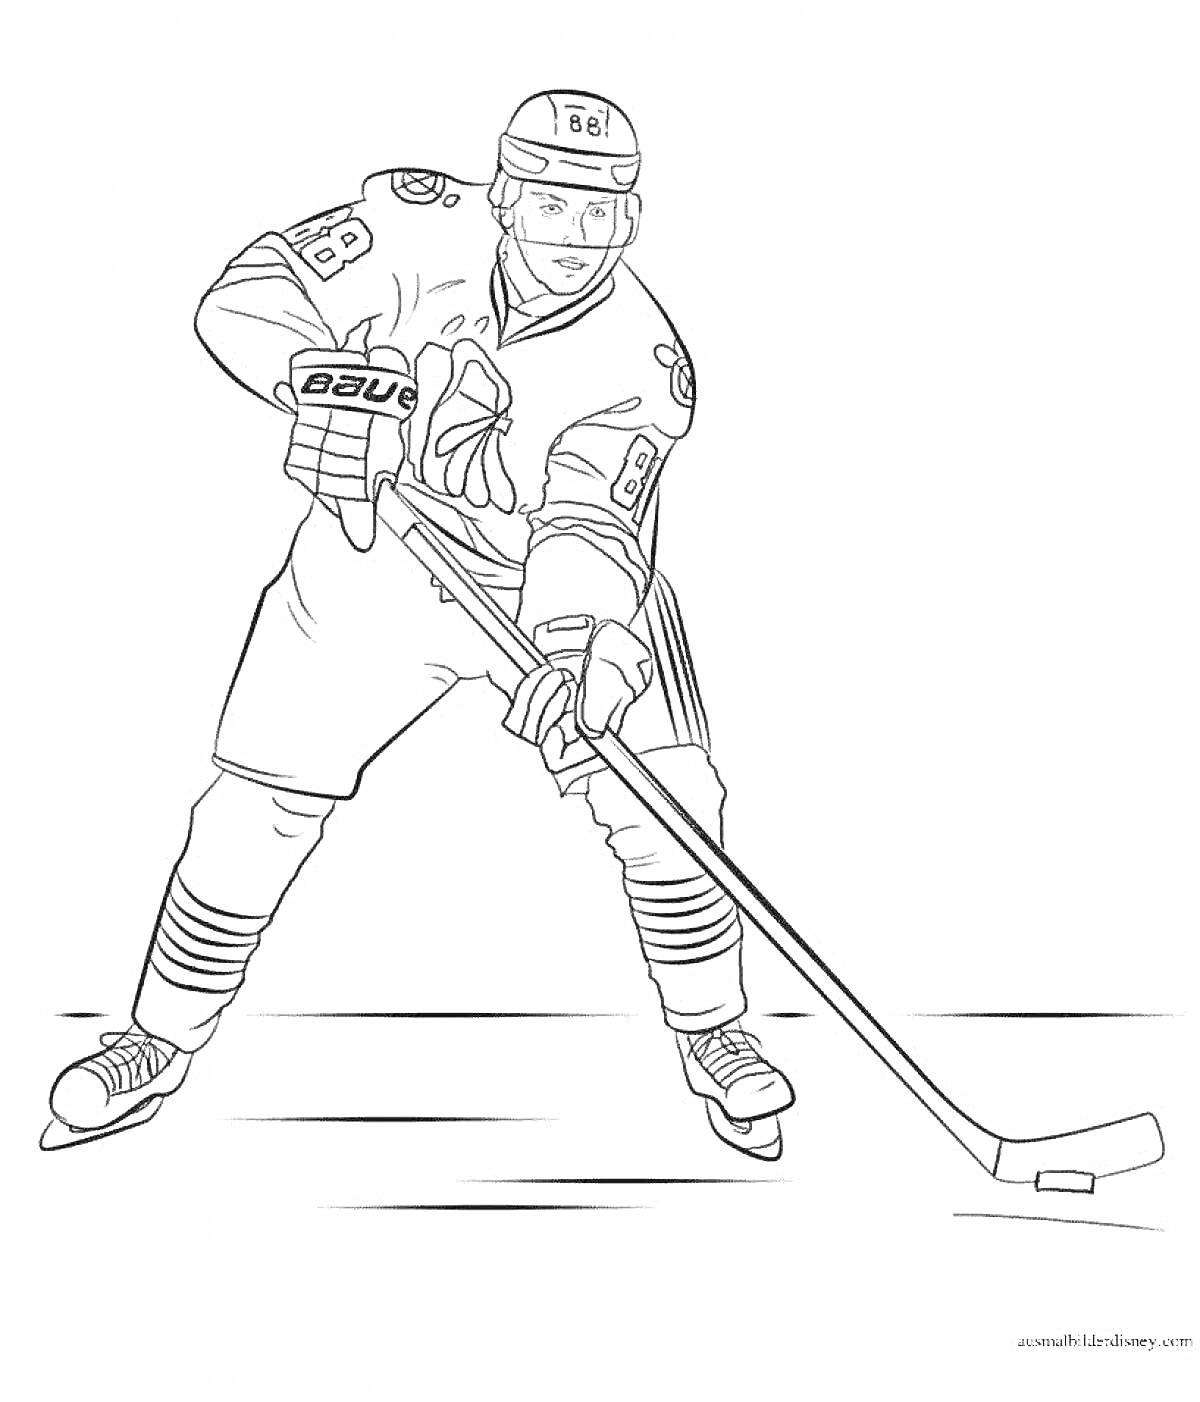 Раскраска Хоккеист в форме с номером 88, держащий клюшку на льду